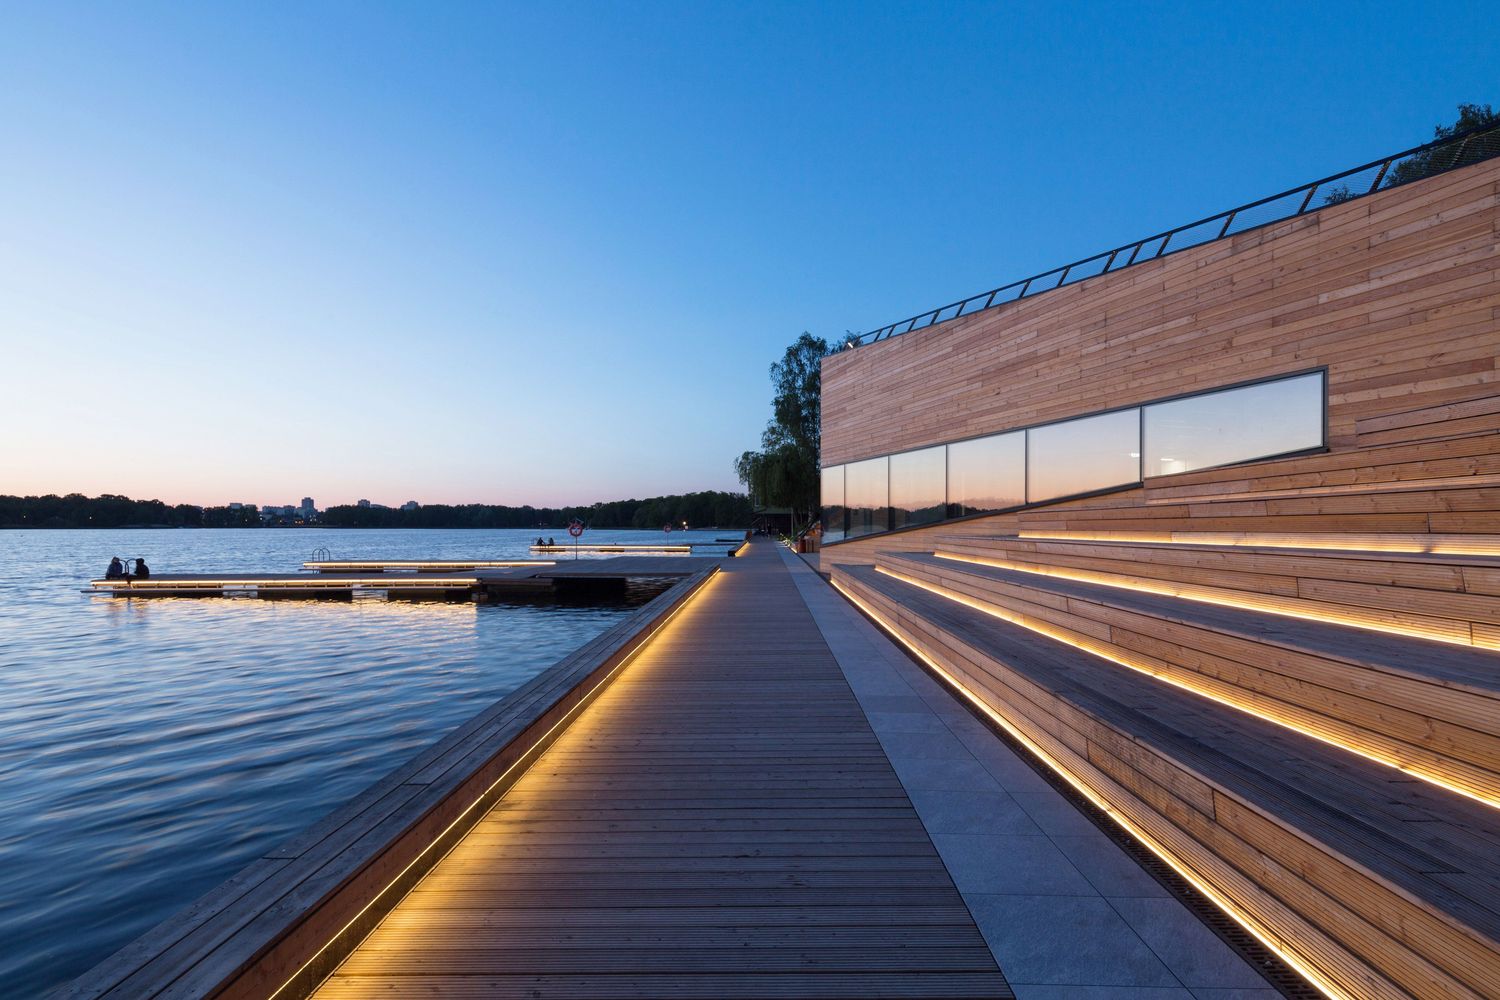 MOSM Canoe Center. Facciata in fibrocemento per un edificio moderno con vista sul lago